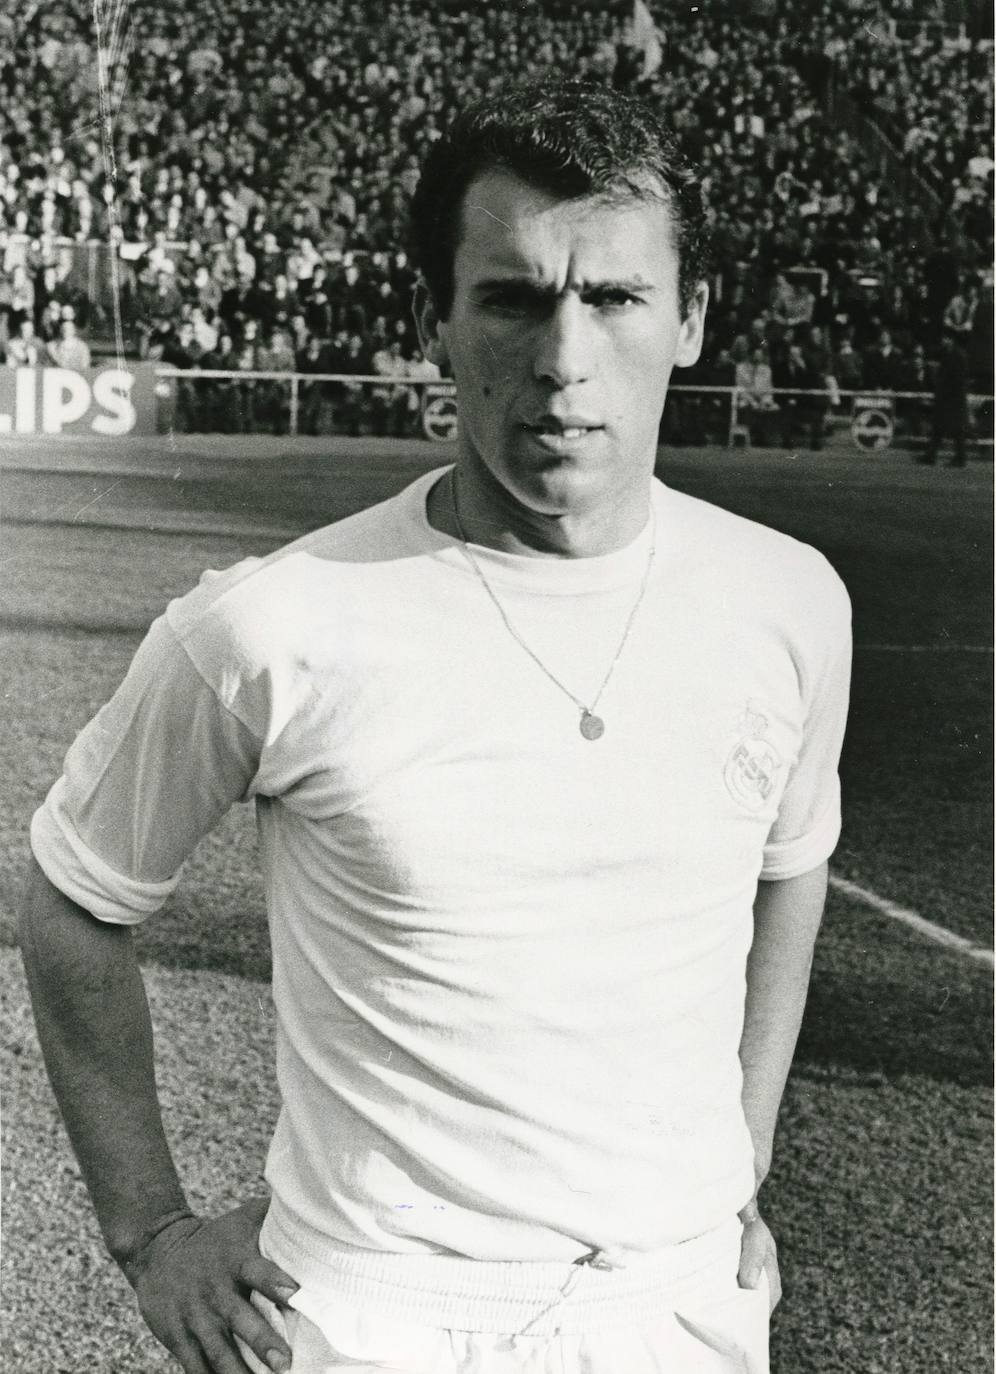 Amancio Amaro jugó en el Real Madrid entre 1962 y 1976, con el que ganó la sexta Copa de Europa en 1966, en la que marcó el primer gol ante el Partizán de Belgrado en el mítico estadio de Heysel de Bruselas, 9 Ligas y 3 Copas de España.